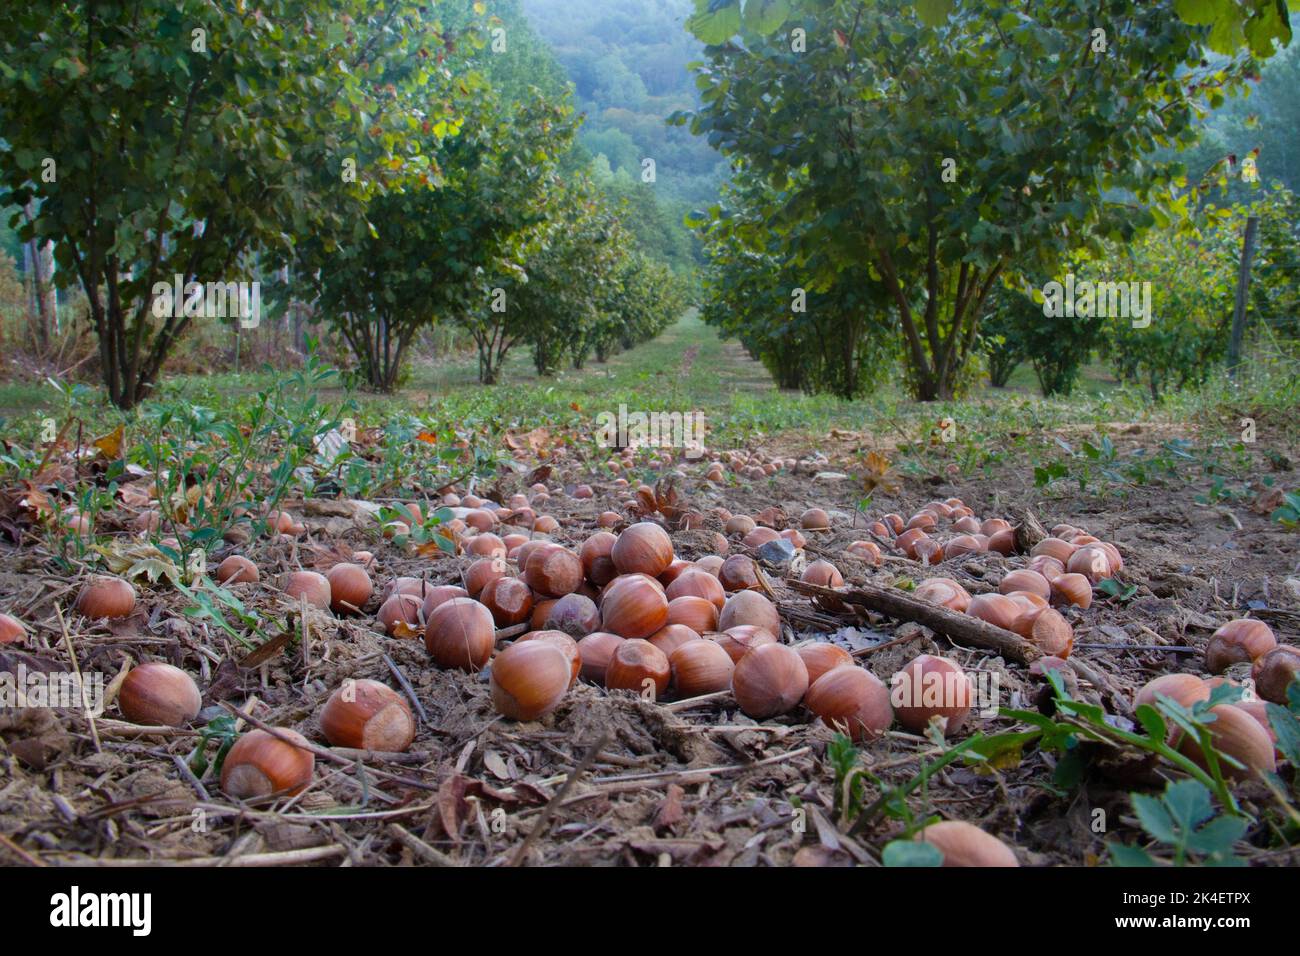 Ripe hazelnuts fallen from trees in a hazelnut orchard Stock Photo